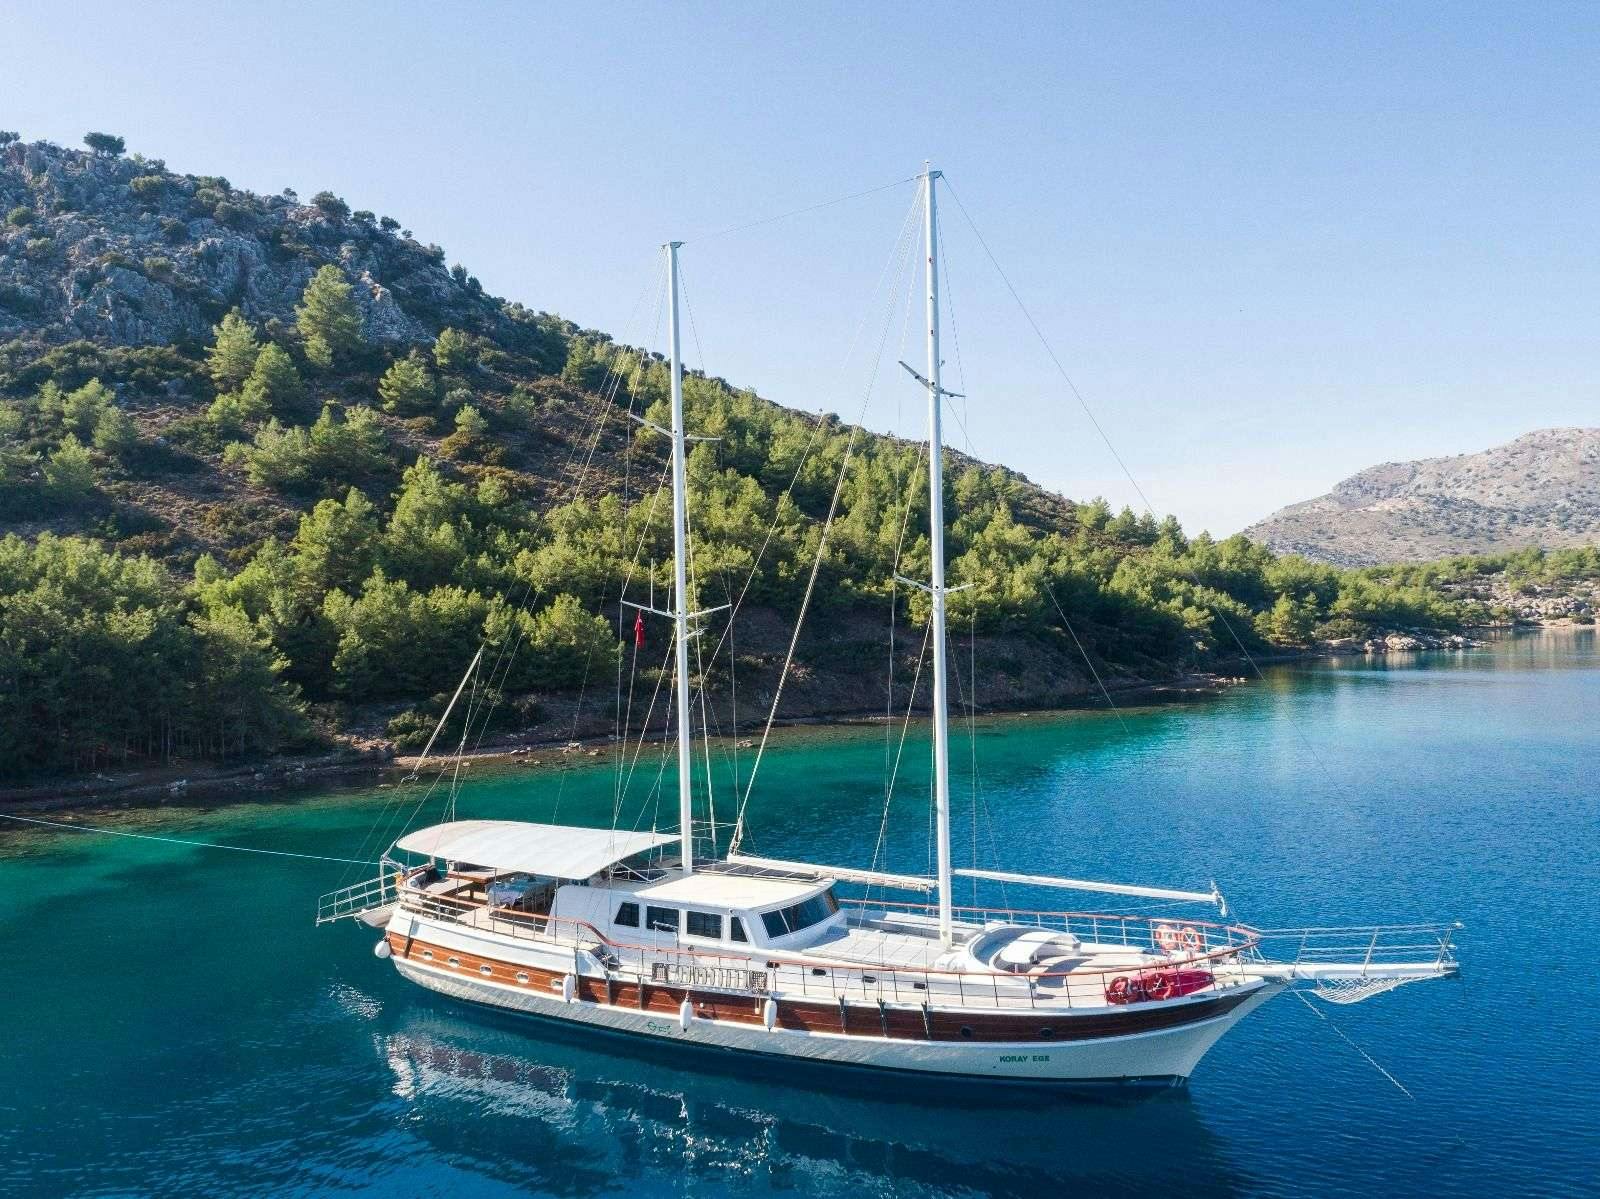 koray ege - Superyacht charter worldwide & Boat hire in Greece & Turkey 1